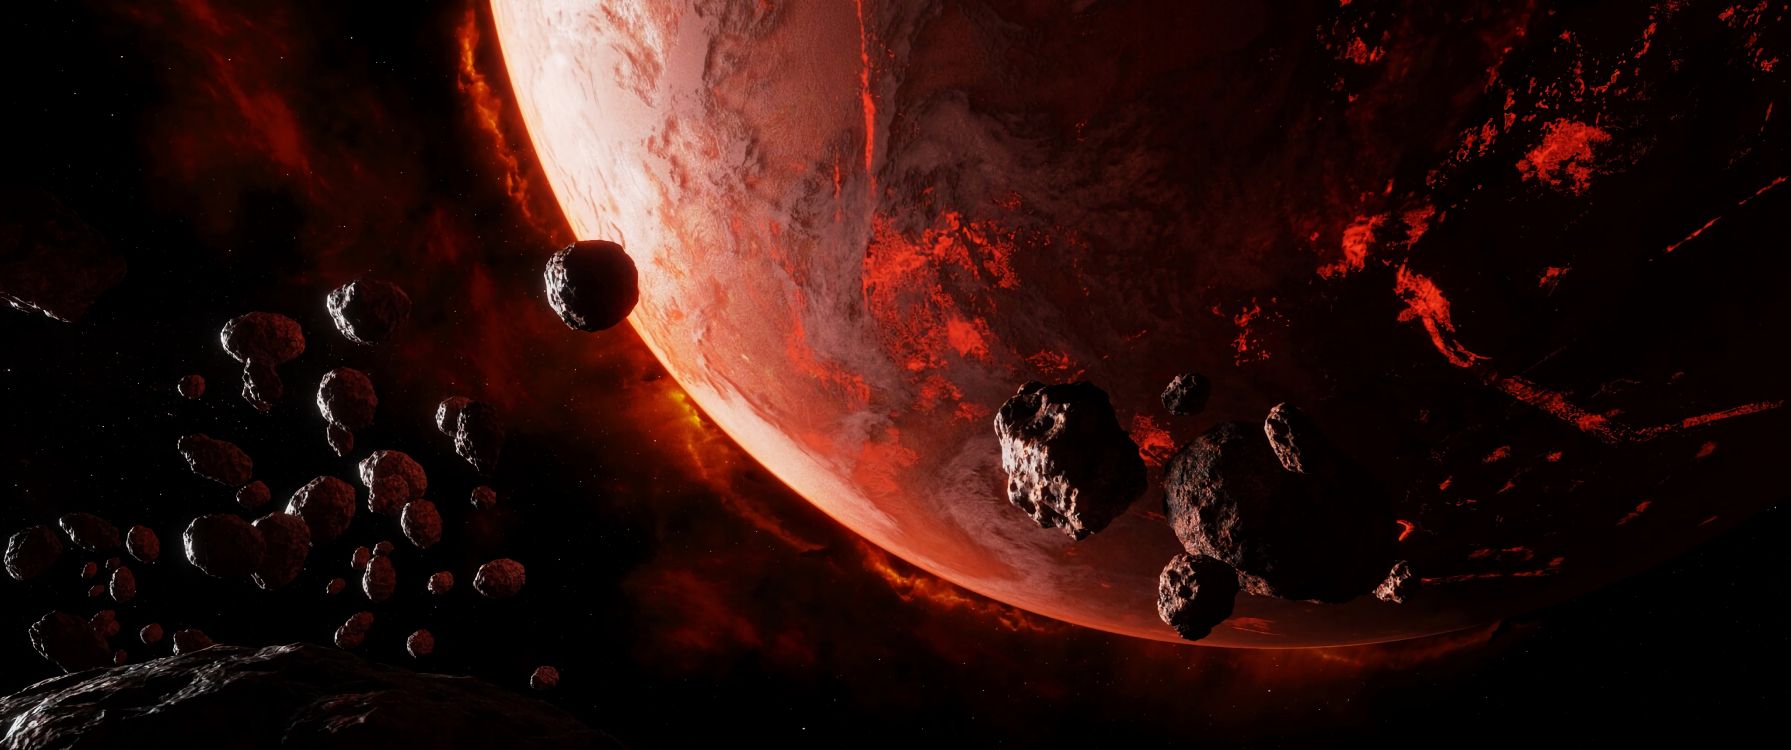 这个星球, 空间, 天文学对象, 红色的, 外层空间 壁纸 7680x3216 允许